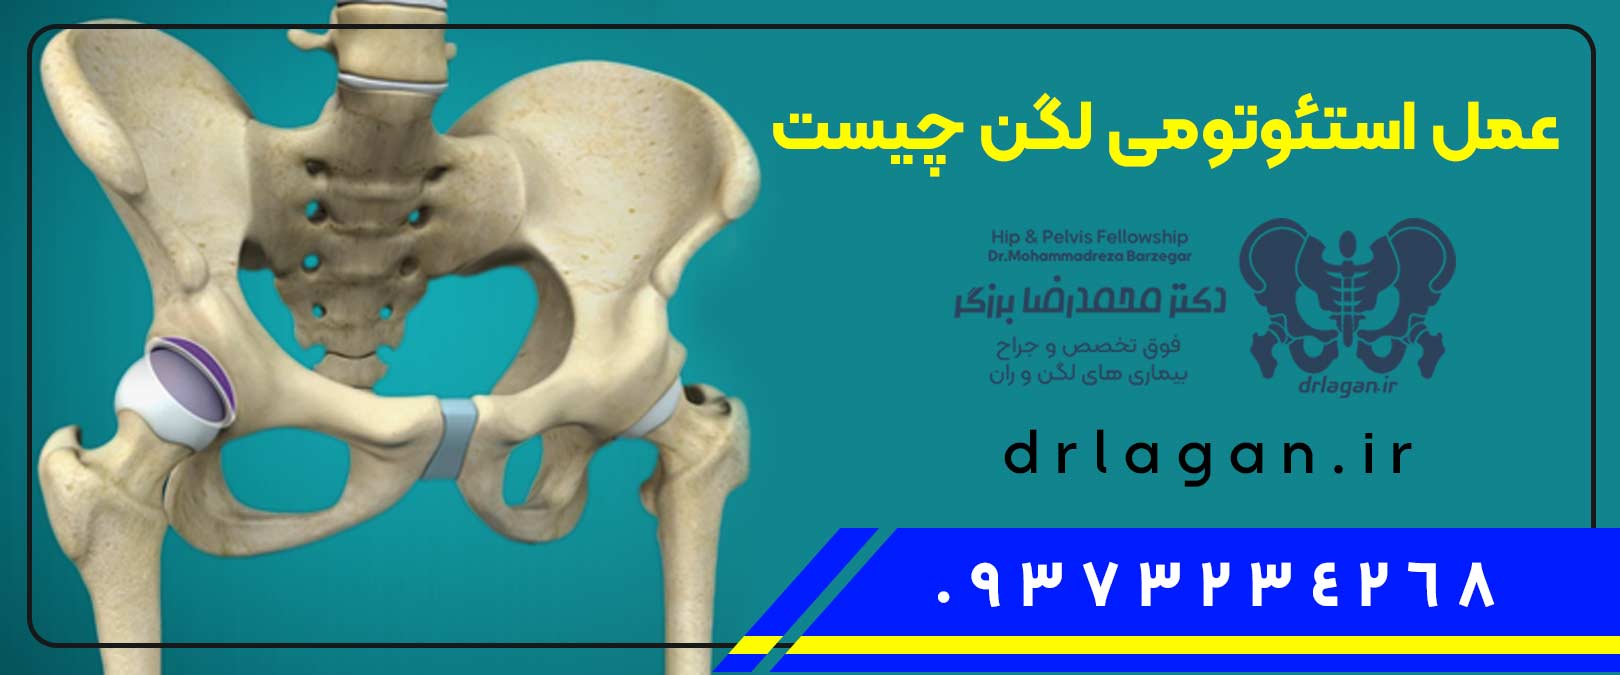 9575-ganz--در-اصفهاناستئوتومی-لگن-ران-هیپ-استئوتومی-لگن-عمل-جراحی-گانز-Ganz-استابولوم-osteotomy، ganz osteotomy, ganz osteotomy approach, ganz osteotomy cpt, ganz osteotomy cpt code, ganz osteotomy for ddh, ganz osteotomy indications, ganz osteotomy orthobullets, ganz osteotomy protocol, ganz osteotomy recovery, ganz osteotomy surgical technique, pelvic osteotomy, pelvic osteotomy bladder exstrophy, pelvic osteotomy child, pelvic osteotomy dog, pelvic osteotomy for ddh, pelvic osteotomy in adults, pelvic osteotomy orthobullets, pelvic osteotomy ppt, pelvic osteotomy recovery time, pelvic osteotomy types, استئوتومی استابولومبی, استئوتومی استابولومی, استئوتومی استخوان ران, استئوتومی ران, استئوتومی گانزده, استئوتومی لگن, استئوتومی لگن چیست, استئوتومی لگنا, استئوتومی لگنت, استئوتومی لگنو, استئوتومی لگنی, استئوتومی مفصل ران, استئوتومی هیپ, استابولوم استئوتومیز, استابولوم استئوتومیزی, استابولوم استئوتومیک, استابولوم استئوتومیم, جراحی استئوتومی ران, جراحی استئوتومی لگن, جراحی استئوتومی لگنی, جراحی استئوتومی لگنیا, جراحی استئوتومی لگنیت, خطرات استئوتومیز, درمان استئوتومی, درمان استئوتومیز, درمان استئوتومیزی, درمان استئوتومیک, درمان استئوتومیم, ران استئوتومیار, ران استئوتومیز, ران استئوتومیک, ران استئوتومیم, عظم الفخذ, عظم الفخذ اسم, عظم الفخذ الانسان, عظم الفخذ العلوي, عظم الفخذ اين يوجد, عظم الفخذ بالانجليزي, عظم الفخذ تشريح, عظم الفخذ عند الانسان, عظم الفخذ للجنين, عظم الفخذ يؤلمني, عمل استئوتومی ران, عمل استئوتومی لگن, عمل استئوتومی لگنا, عمل استئوتومی لگنو, عمل استئوتومی لگنی, عمل جراحی استئوتومی لگن, عوارض استئوتومی لگنا, عوارض استئوتومی لگنی, فیلم عمل استئوتومی لگن, قطع عظم استابولومی, قطع عظم الحوضه, قطع عظم الحوضي, قطع عظم الحوضی, قطع عظم الحوضیه, قطع عظم الفخذی, قطع عظم جانزاده, قطع عظم جانزد, قطع عظم جانزده, قطع عظم جانزدی, لگن استئوتومیز, لگن استئوتومیک, لگن استئوتومیم, مراقبت استئوتومی ایران, مراقبت استئوتومی بد, مراقبت استئوتومی دیوار, مراقبت استئوتومی مردانه, مراقبت های عمل استئوتومی, هیپ استئوتومیز, هیپ استئوتومیزی, هیپ استئوتومیک, هیپ استئوتومیم